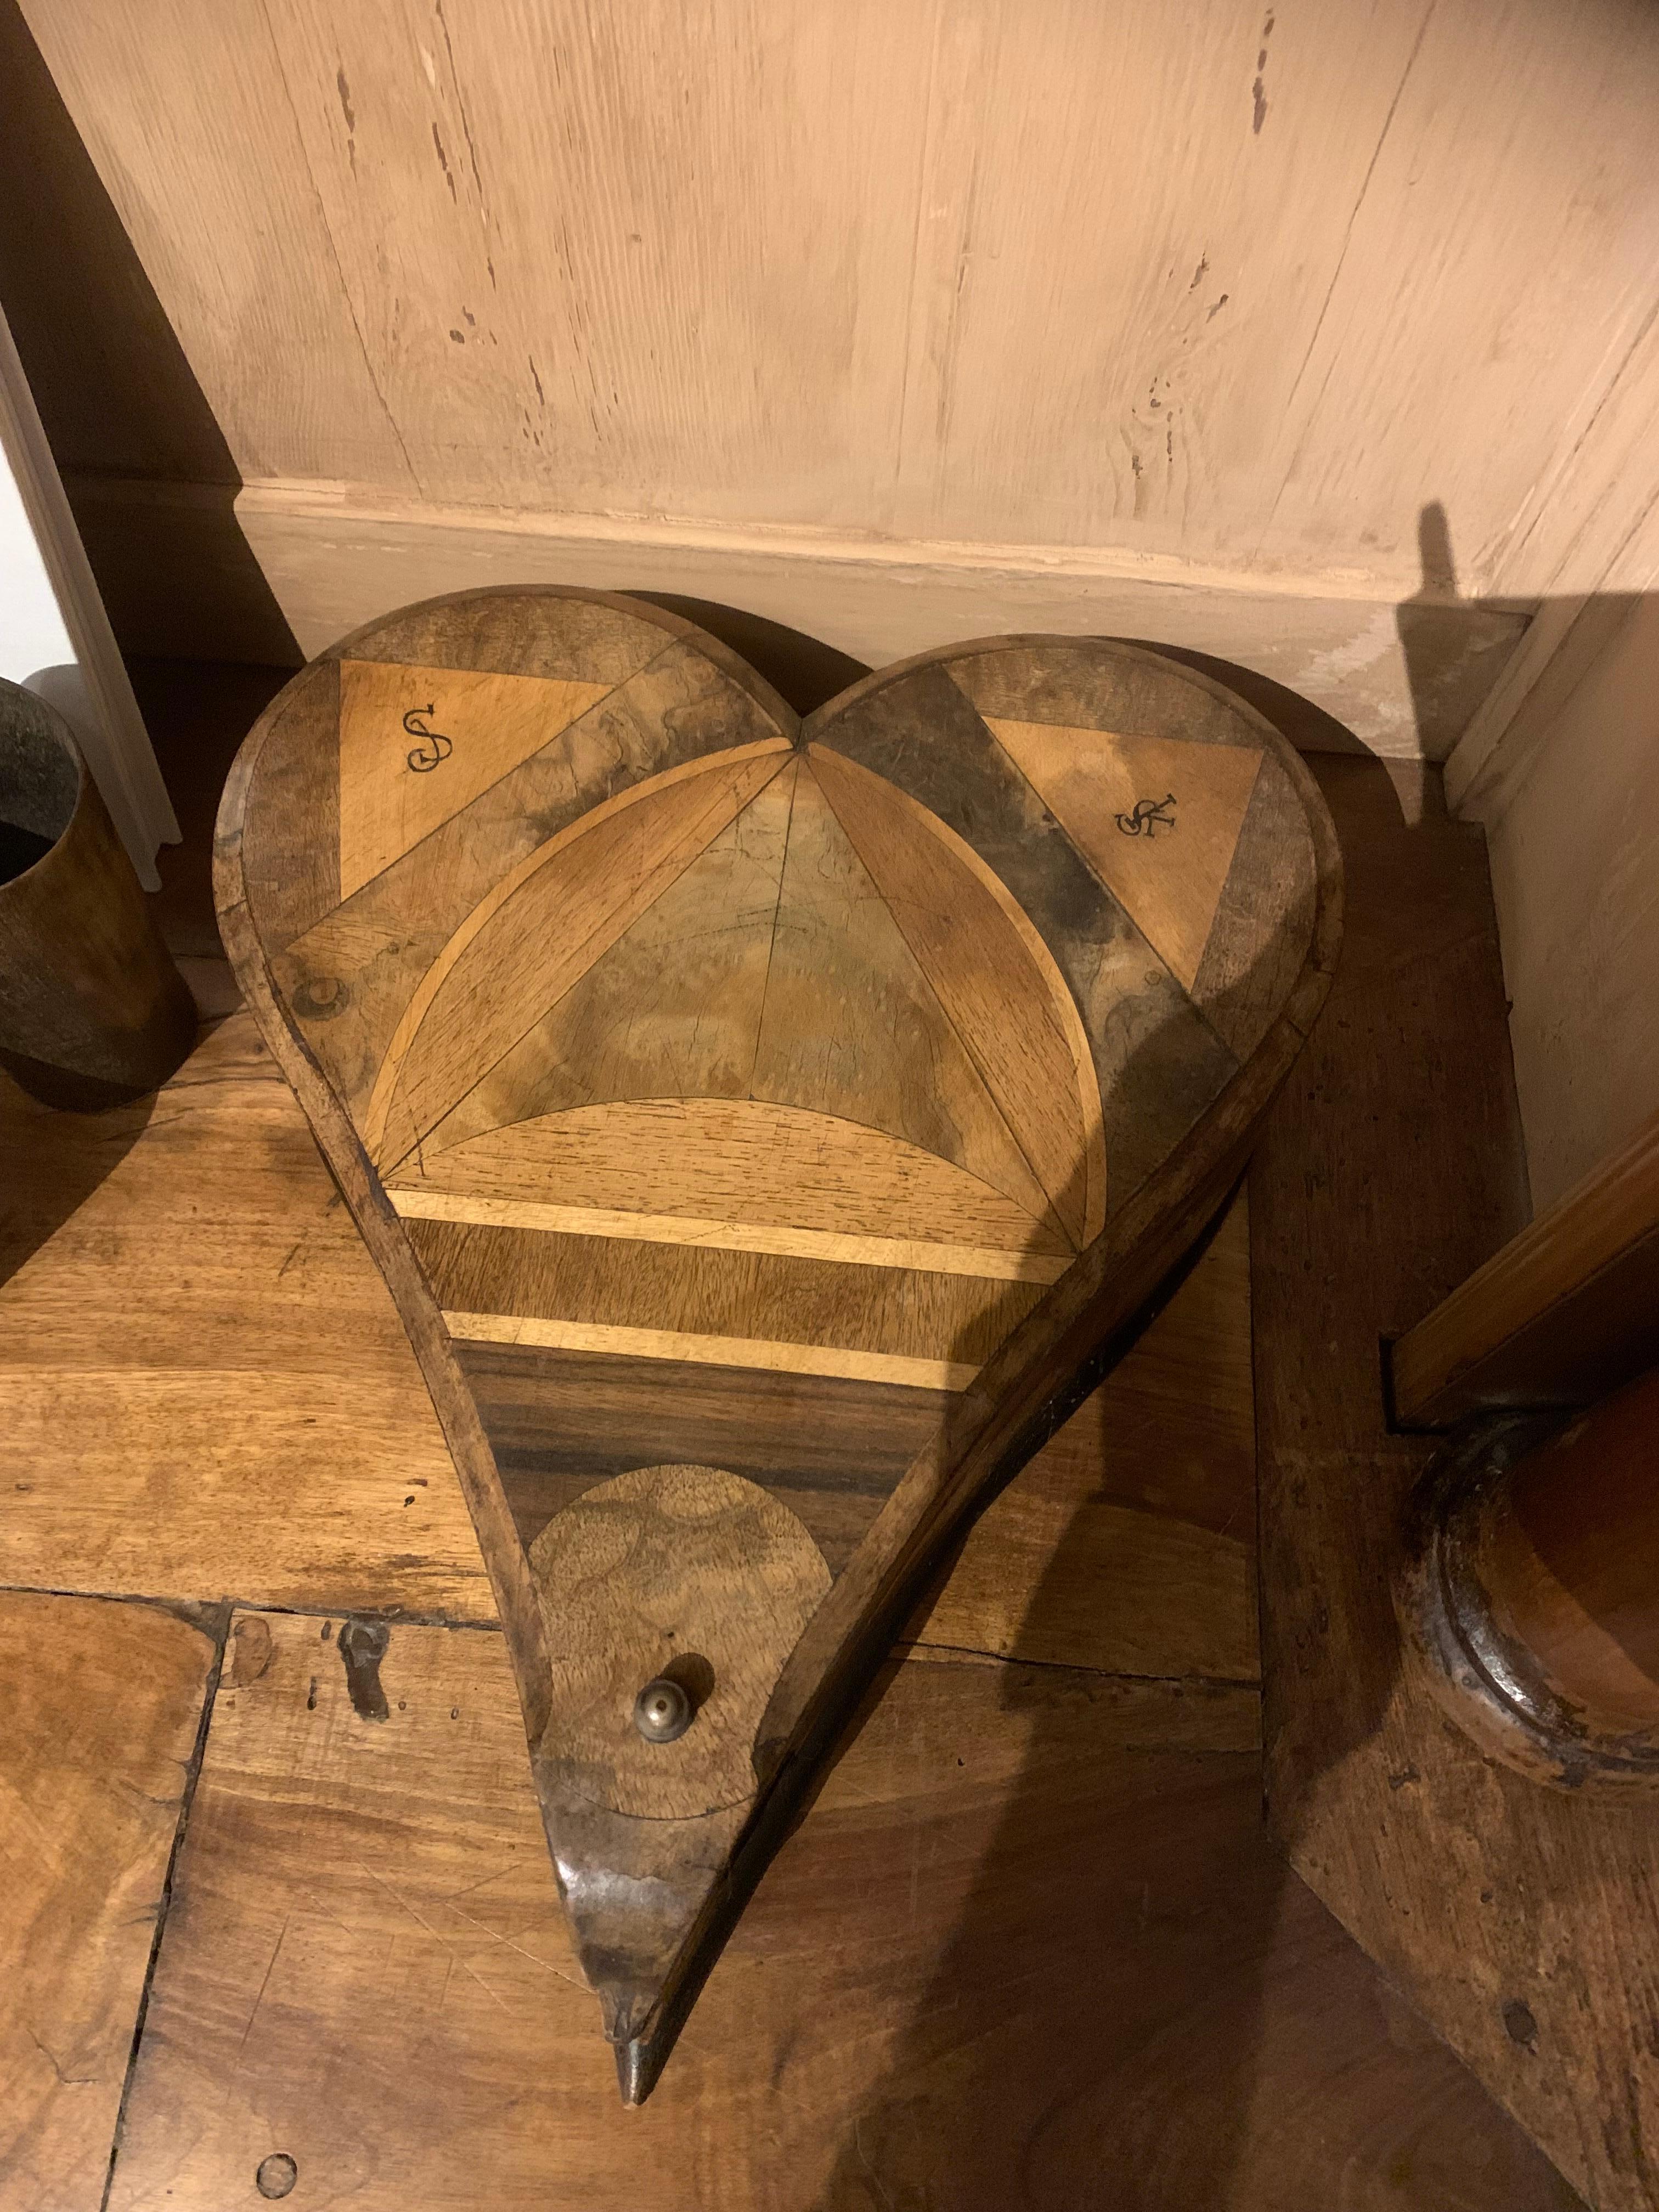 Une magnifique boîte en bois en forme de cœur avec une fine incrustation intarsia de différentes essences de bois et de monogrammes. Probablement Italie, XIXe siècle. La vie est comme une boîte de chocolats.